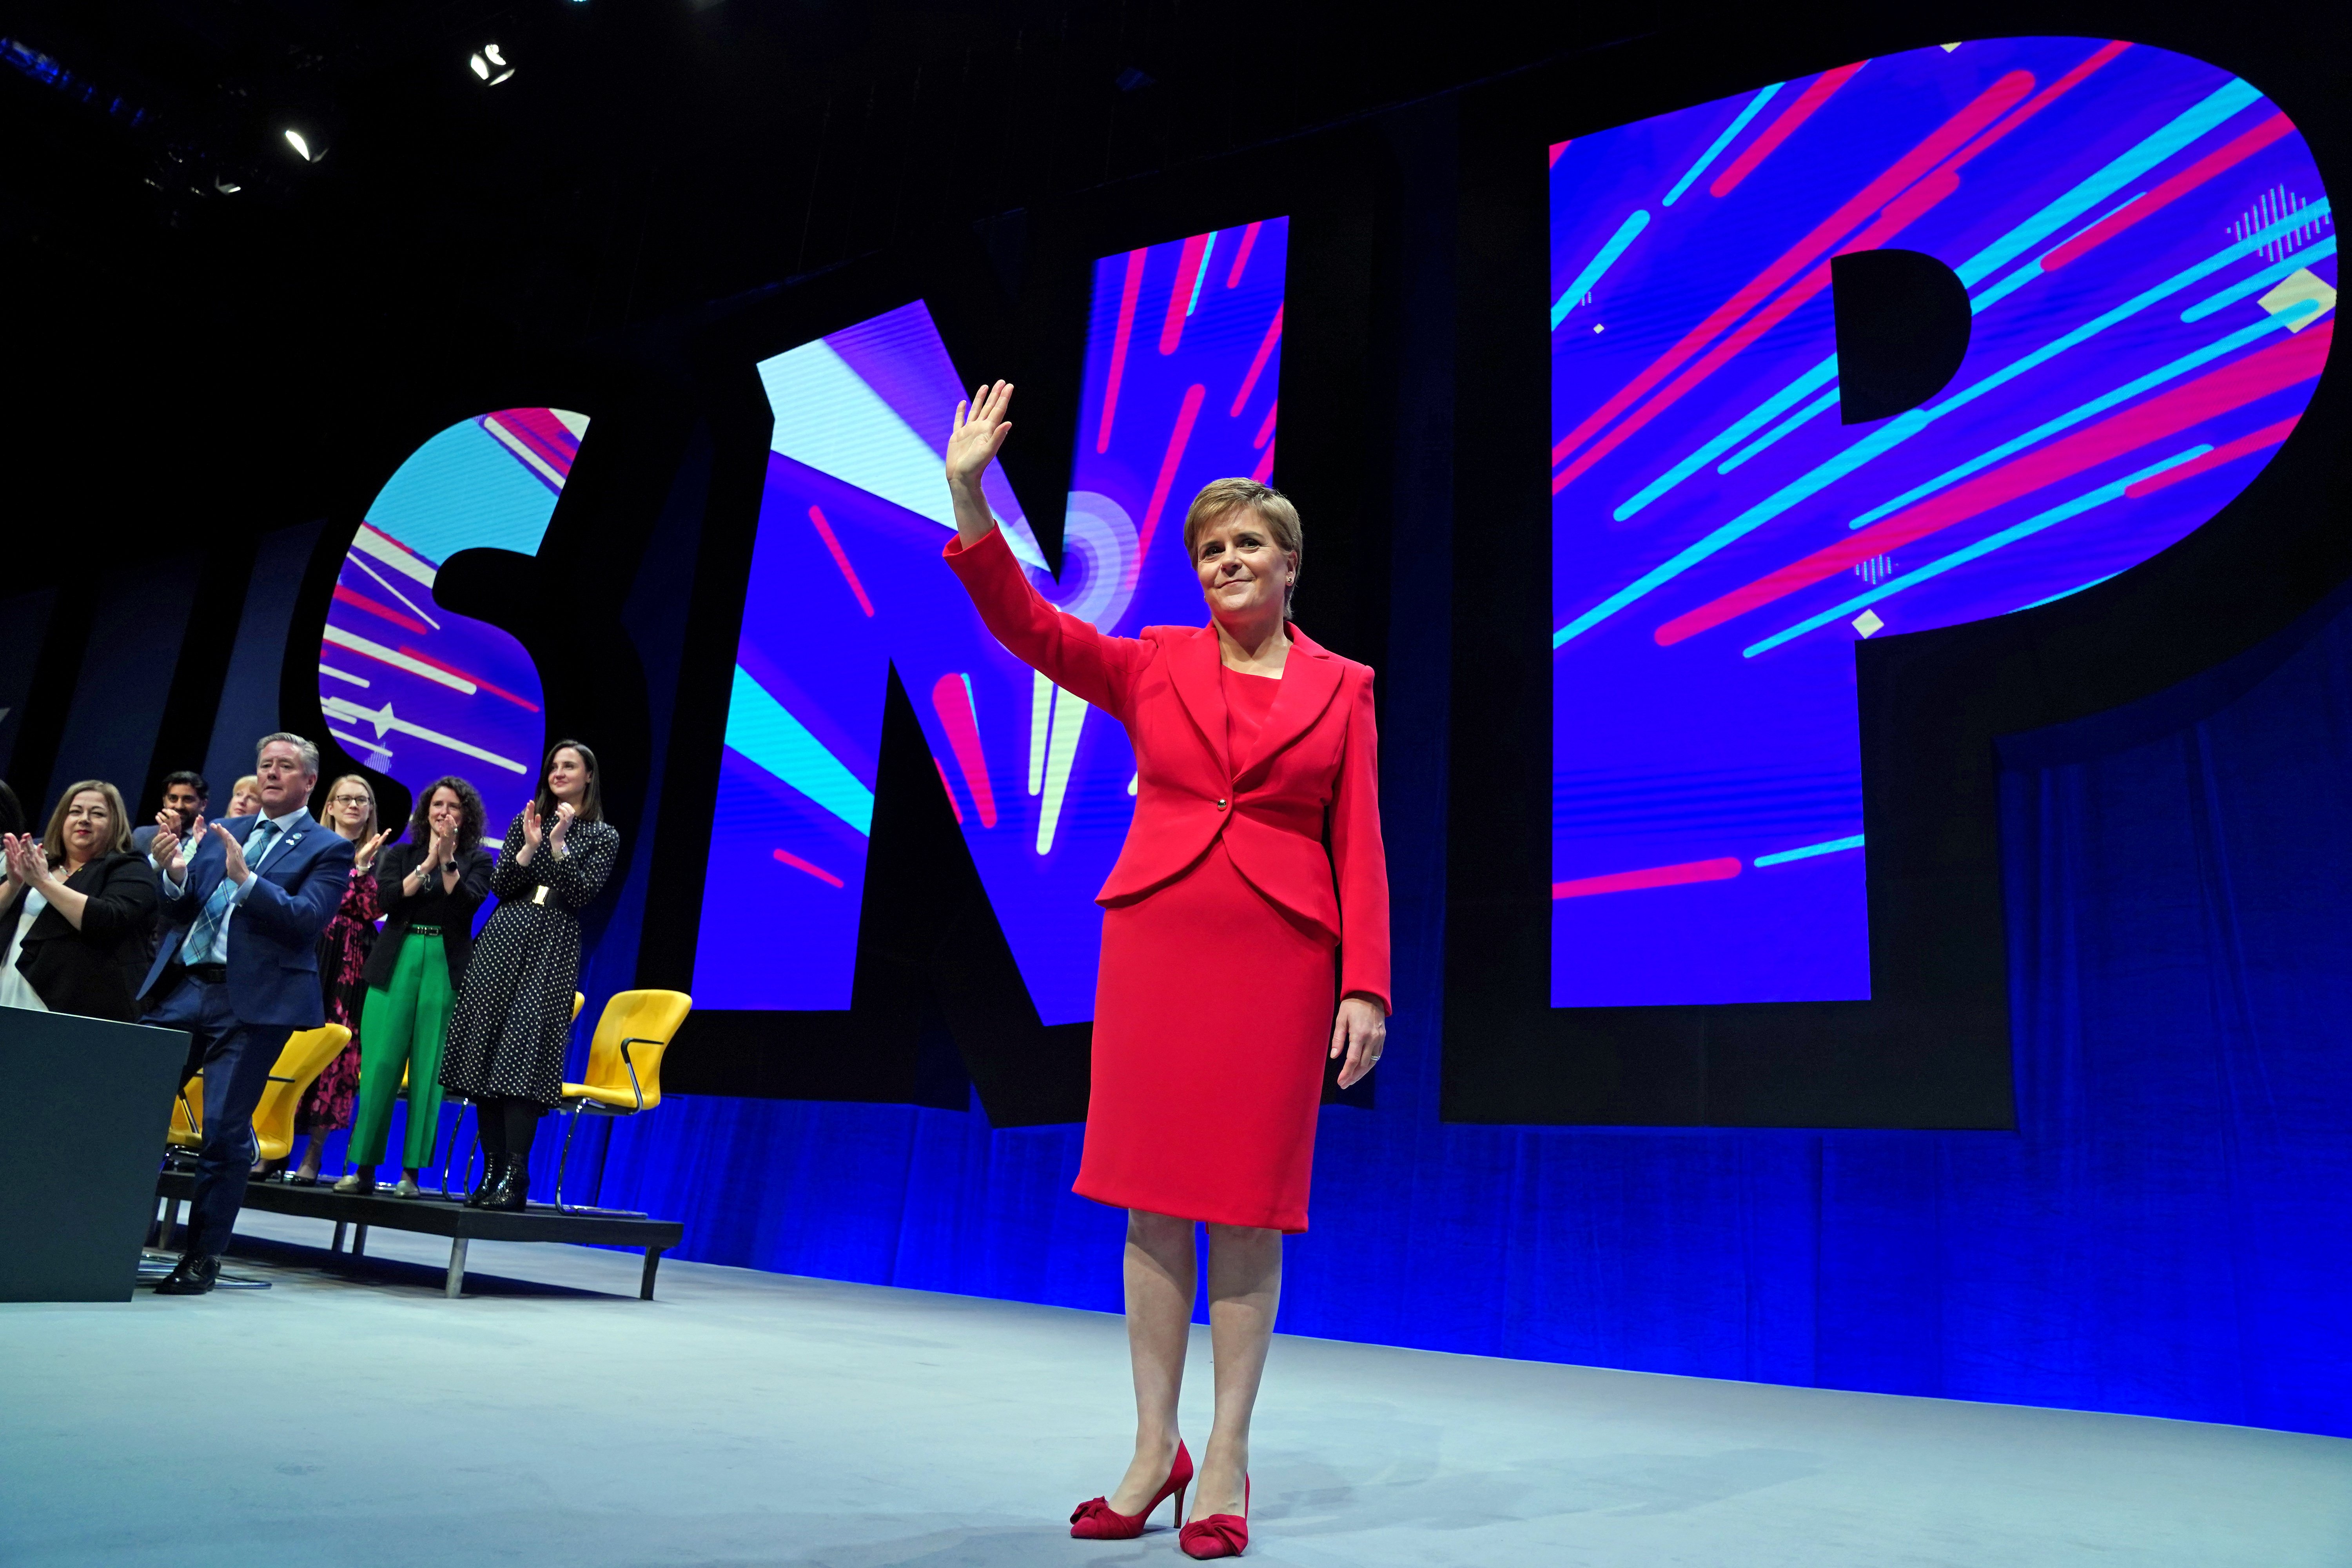 La mitad de los escoceses votaría el SNP si eso les asegura la independencia